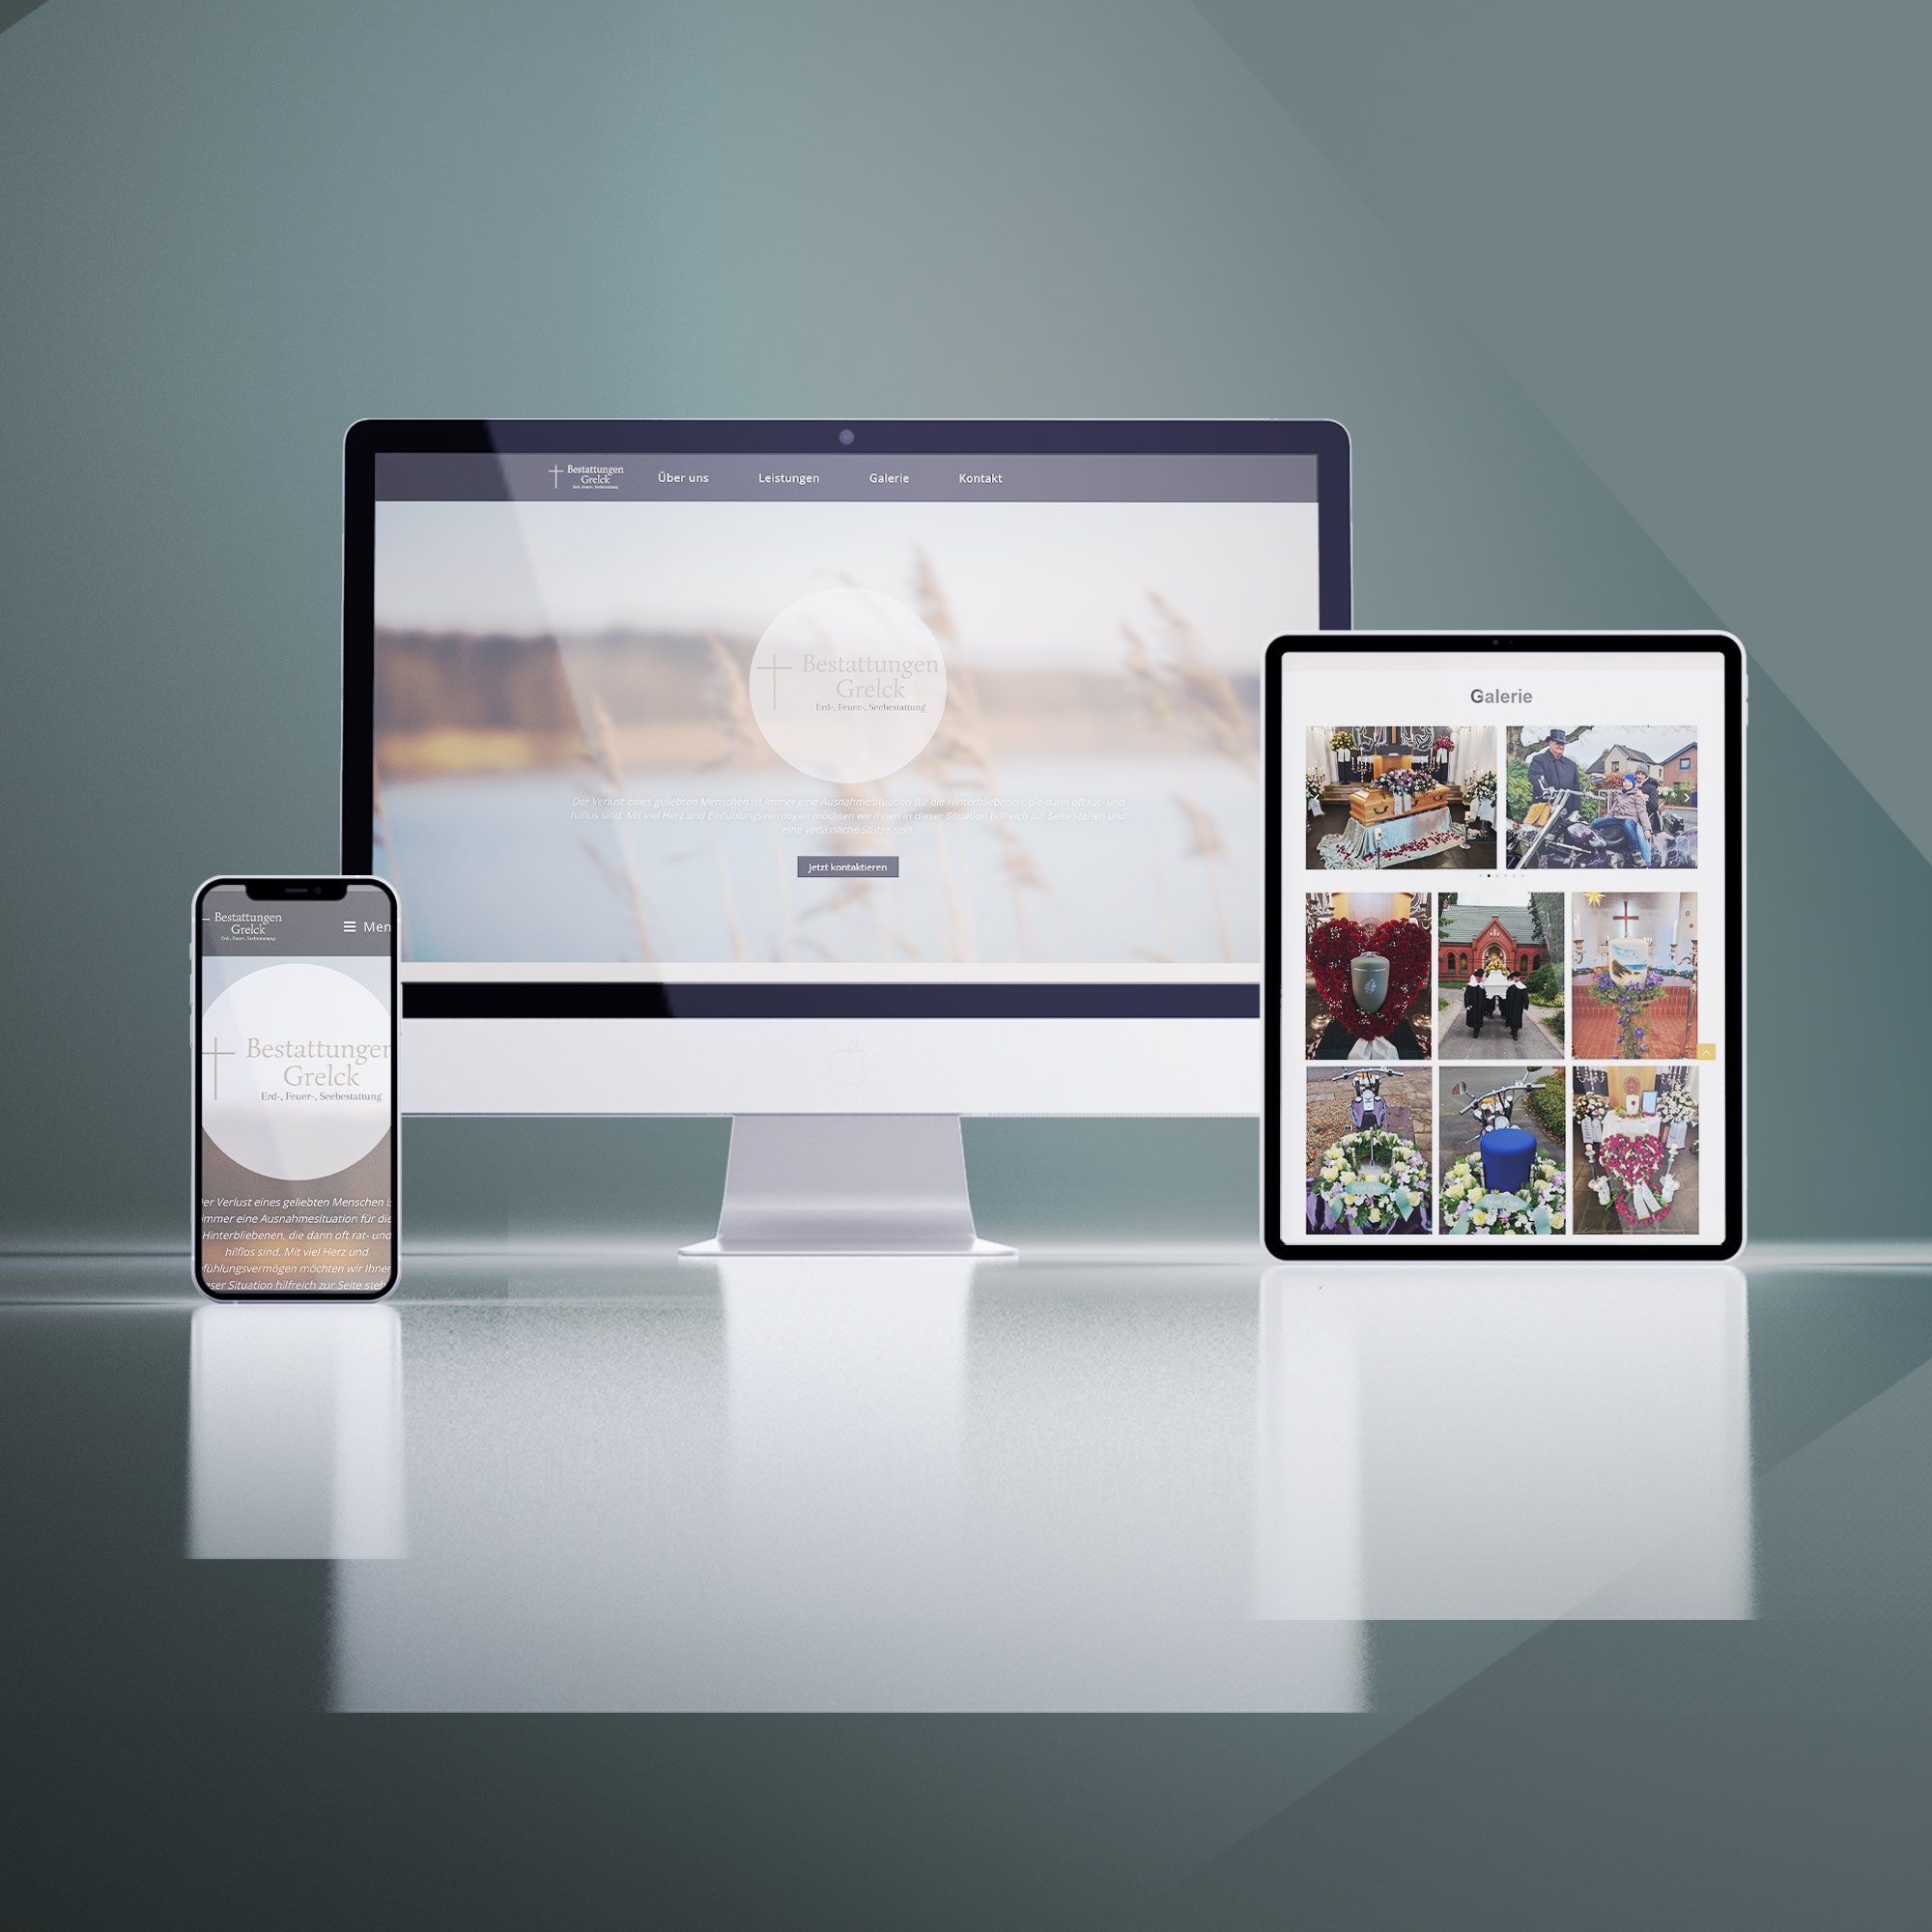 Portfolio Webdesign Grelck Bestattungen Tornesch - House of Marketing